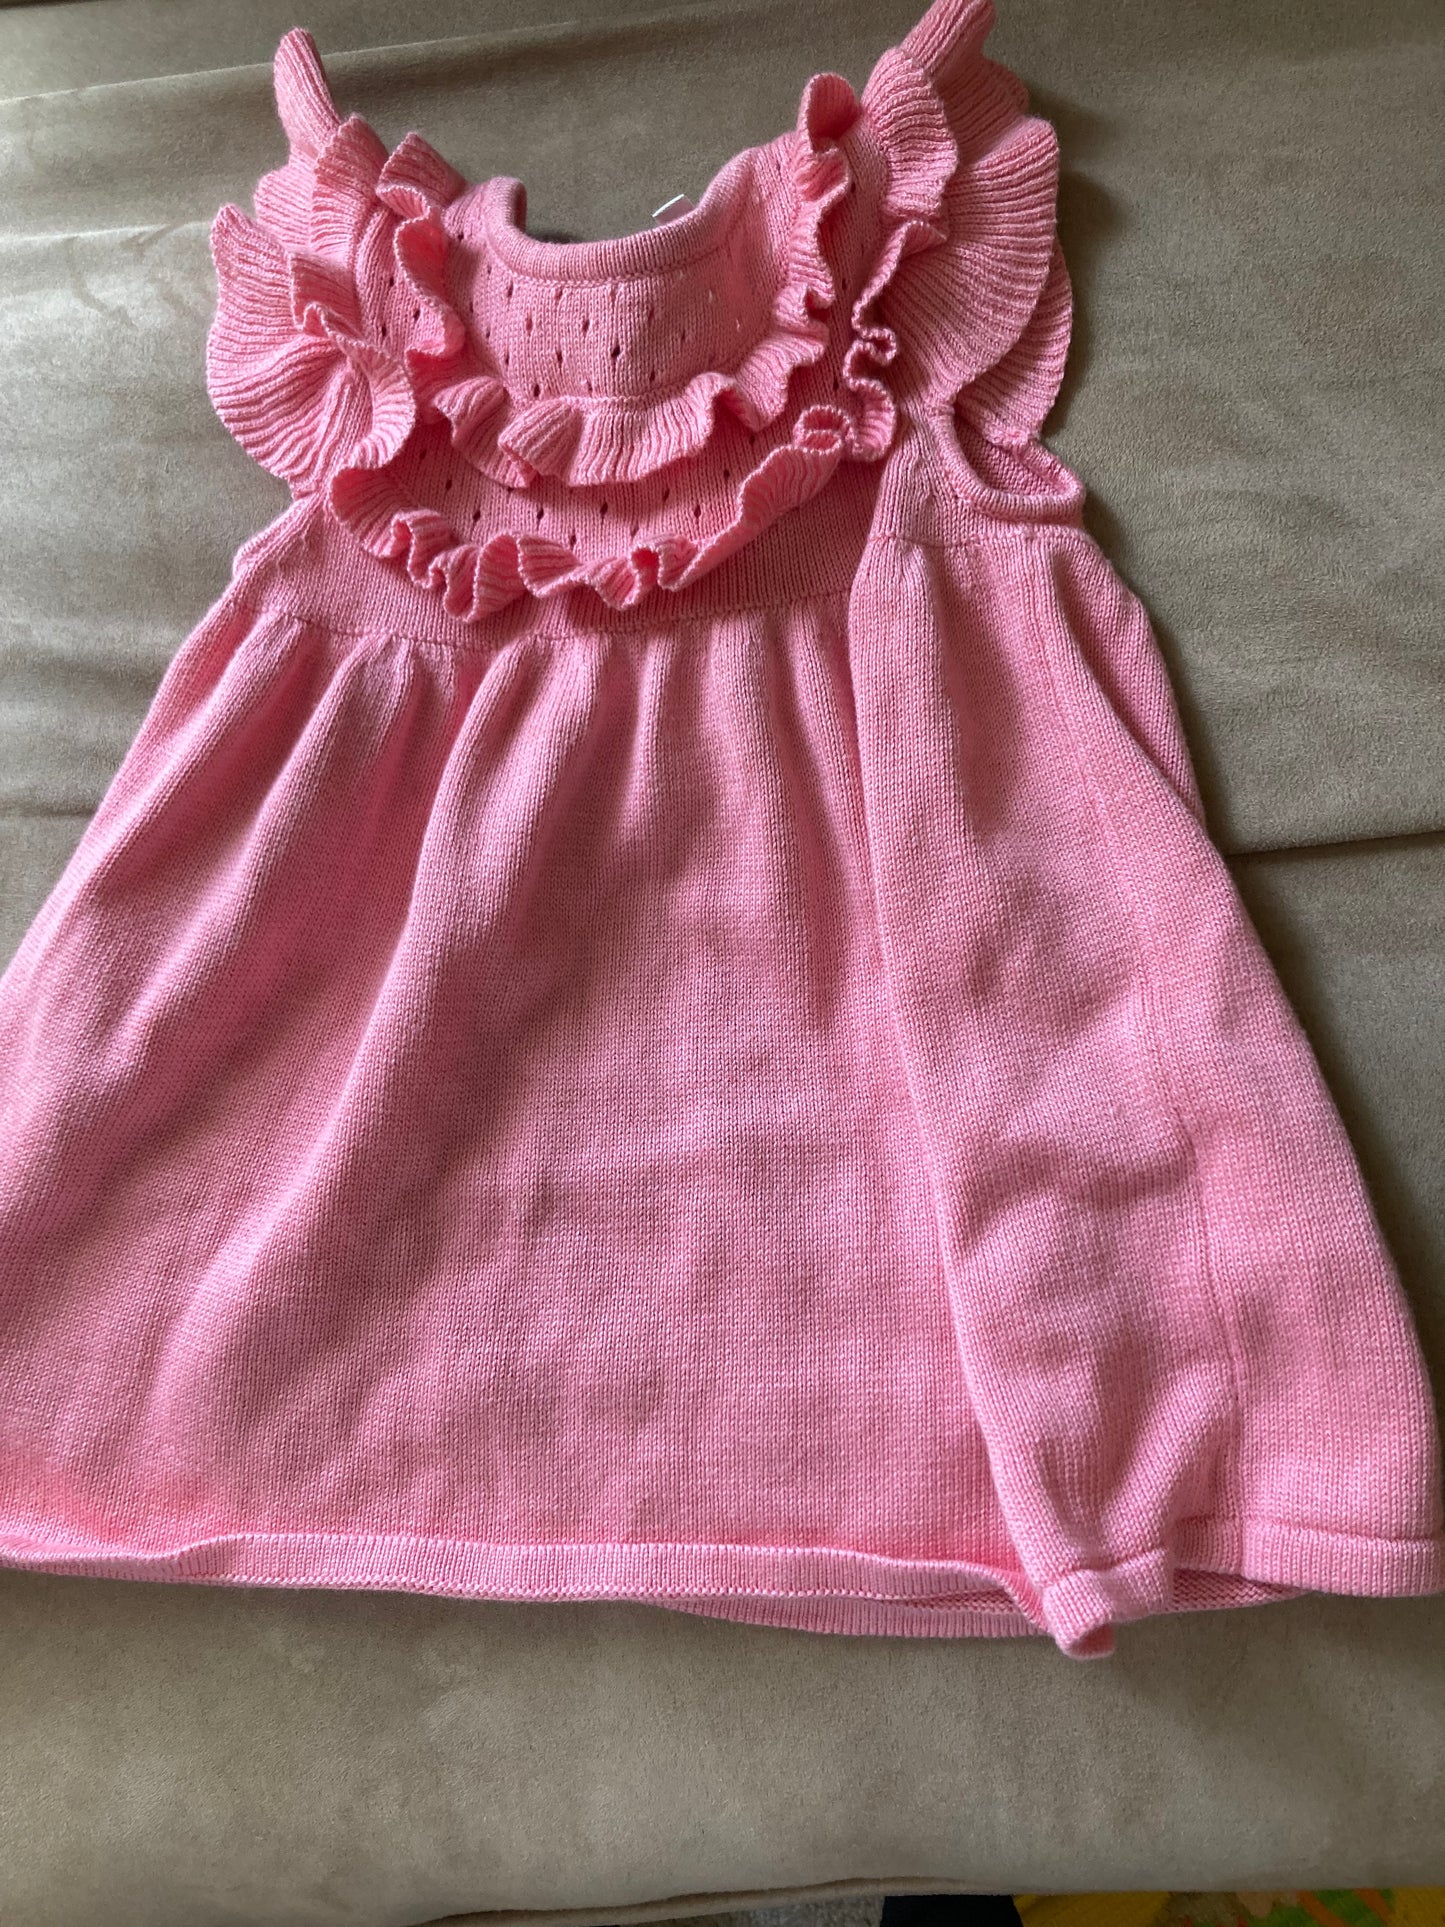 Pink sleeveless ruffle sweater dress